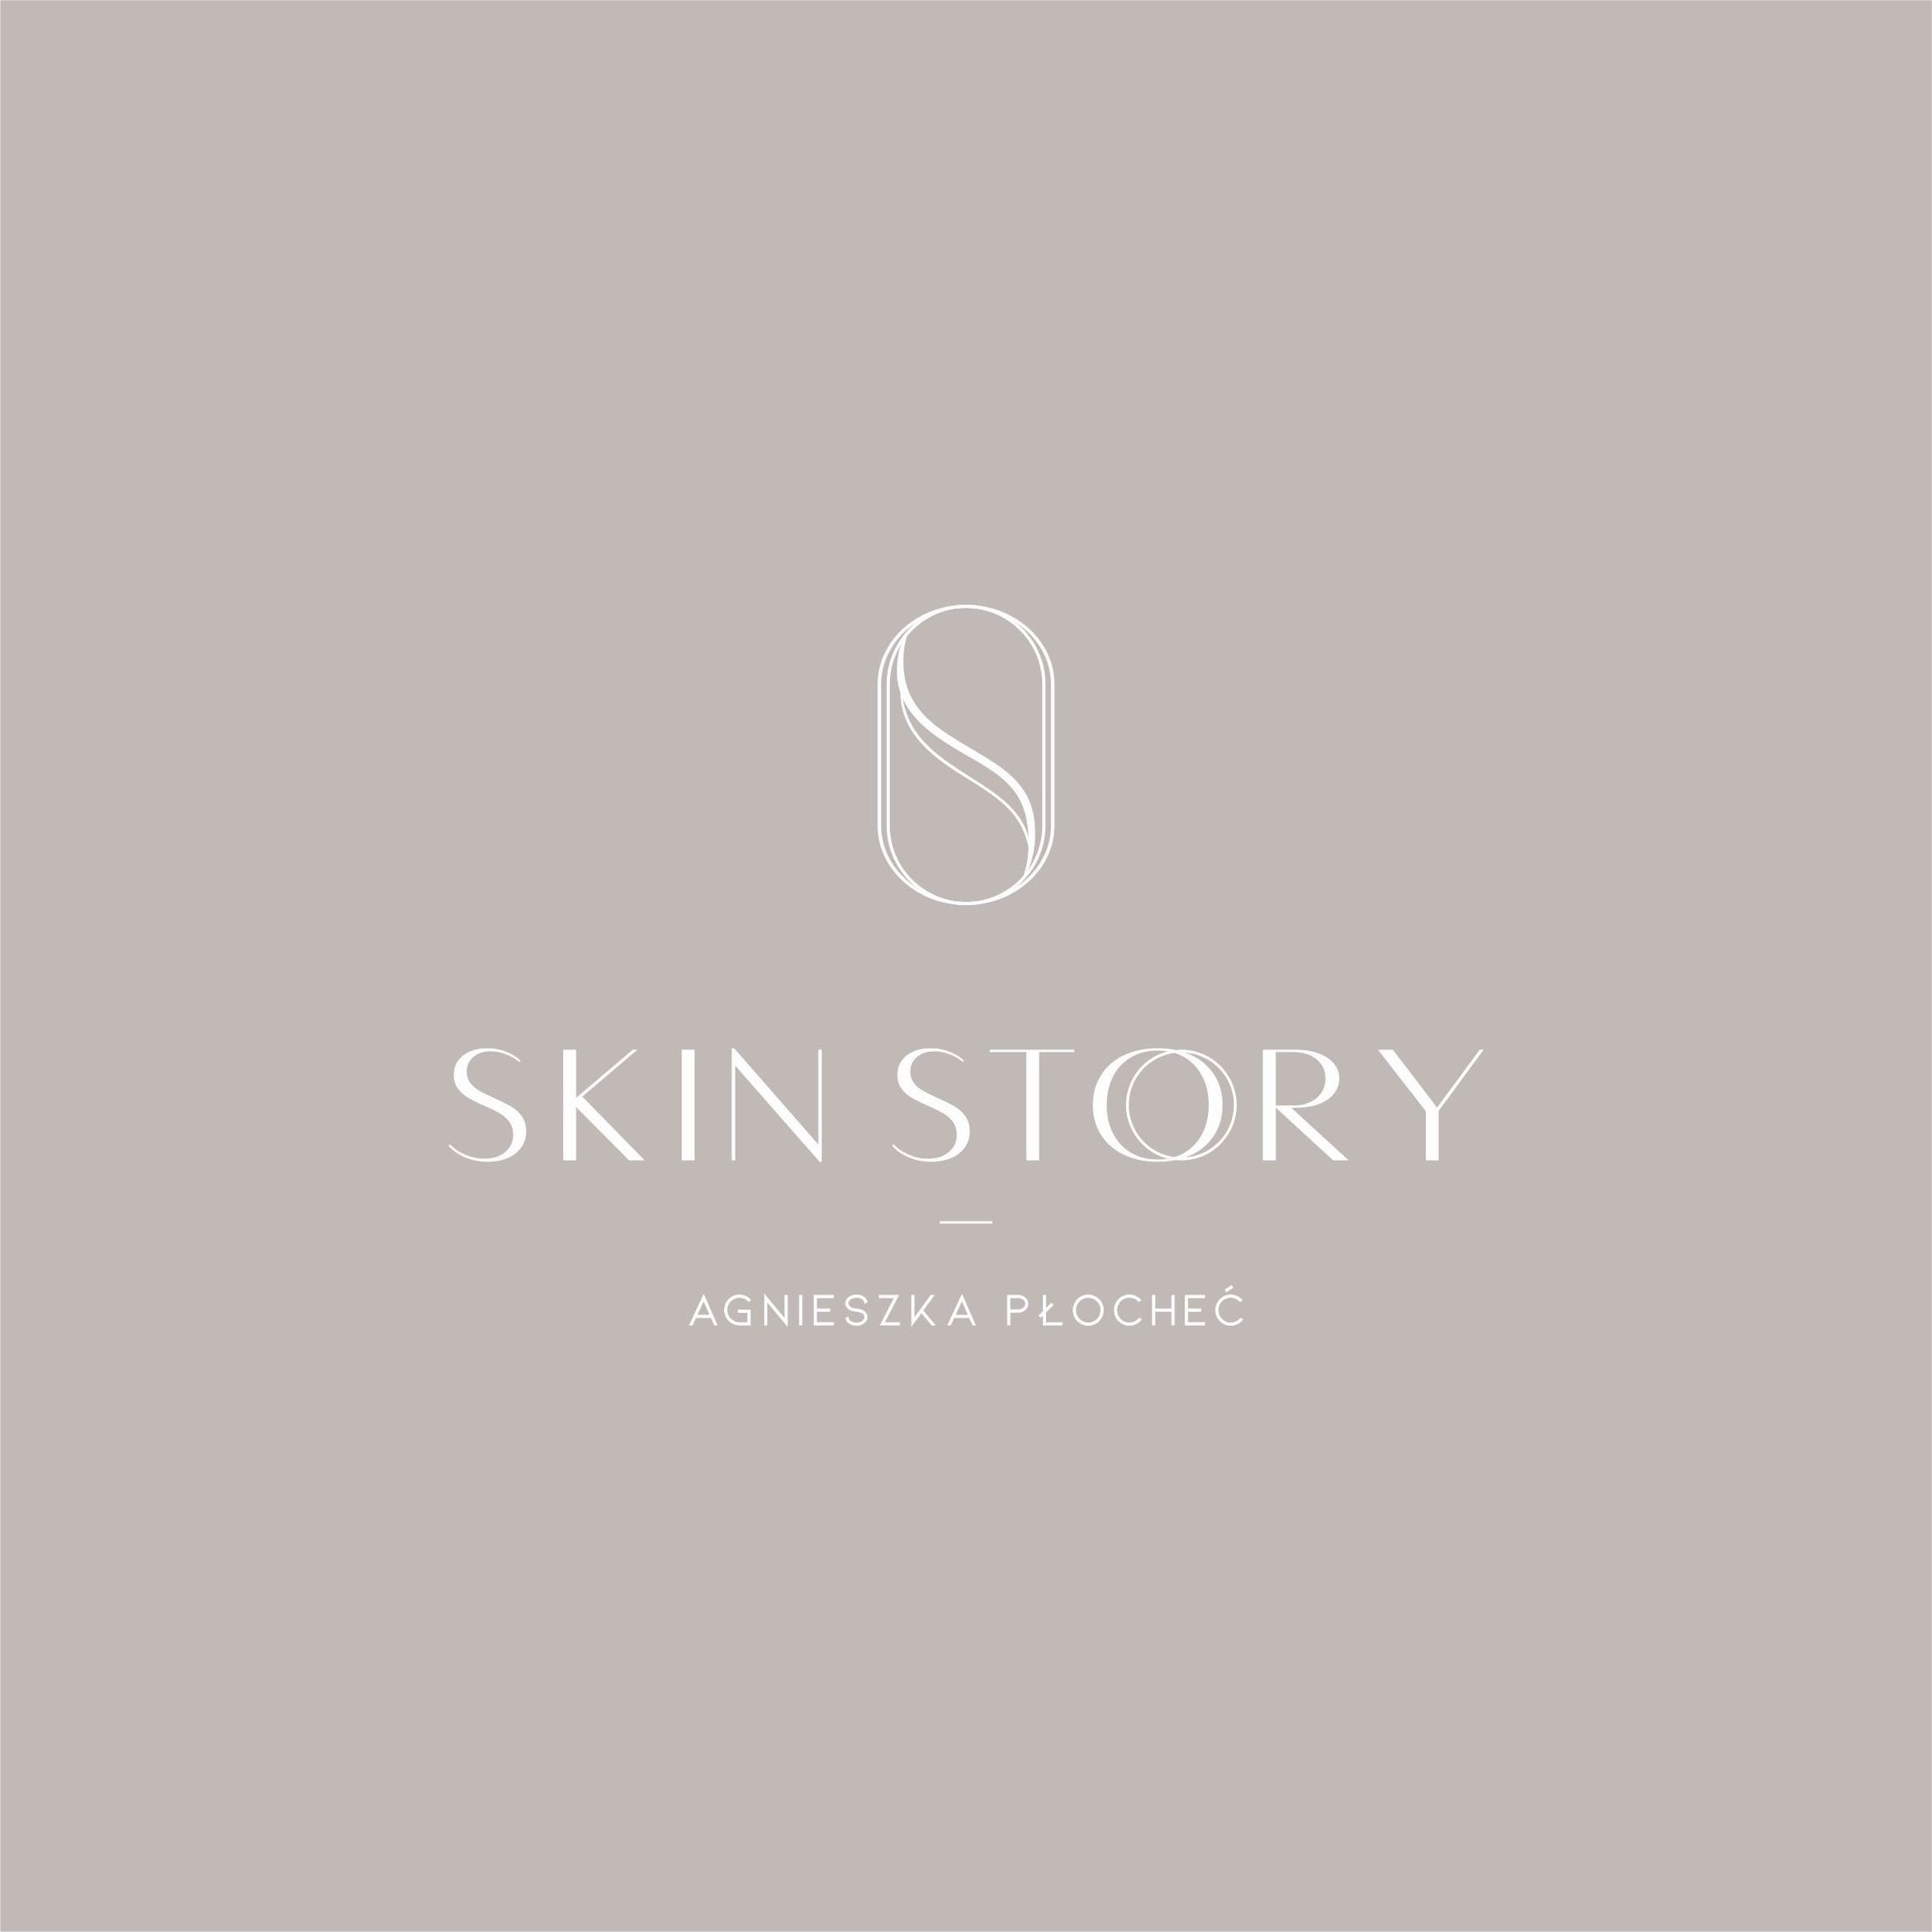 Skin Story - kosmetologia lecznicza & estetyczna, Portowa 6, 1, 81-431, Gdynia